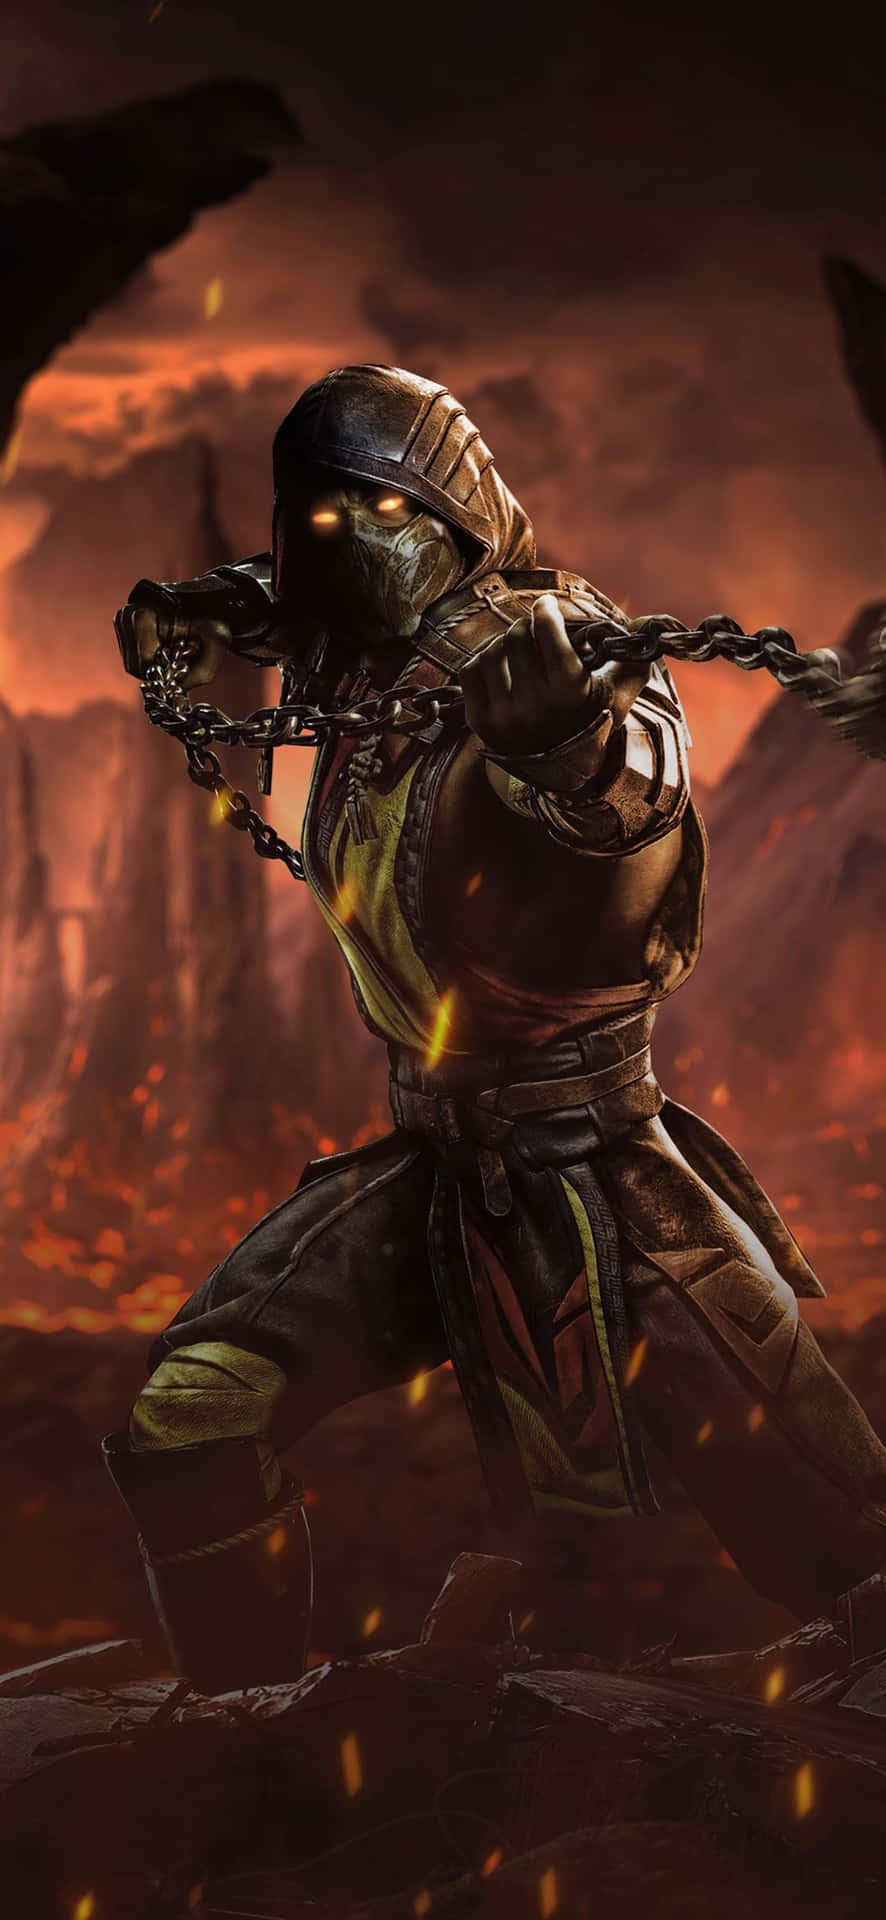 Mortalkombat's Scorpion Strikes – Dödligt Slagsmåls Scorpions Attack. Wallpaper